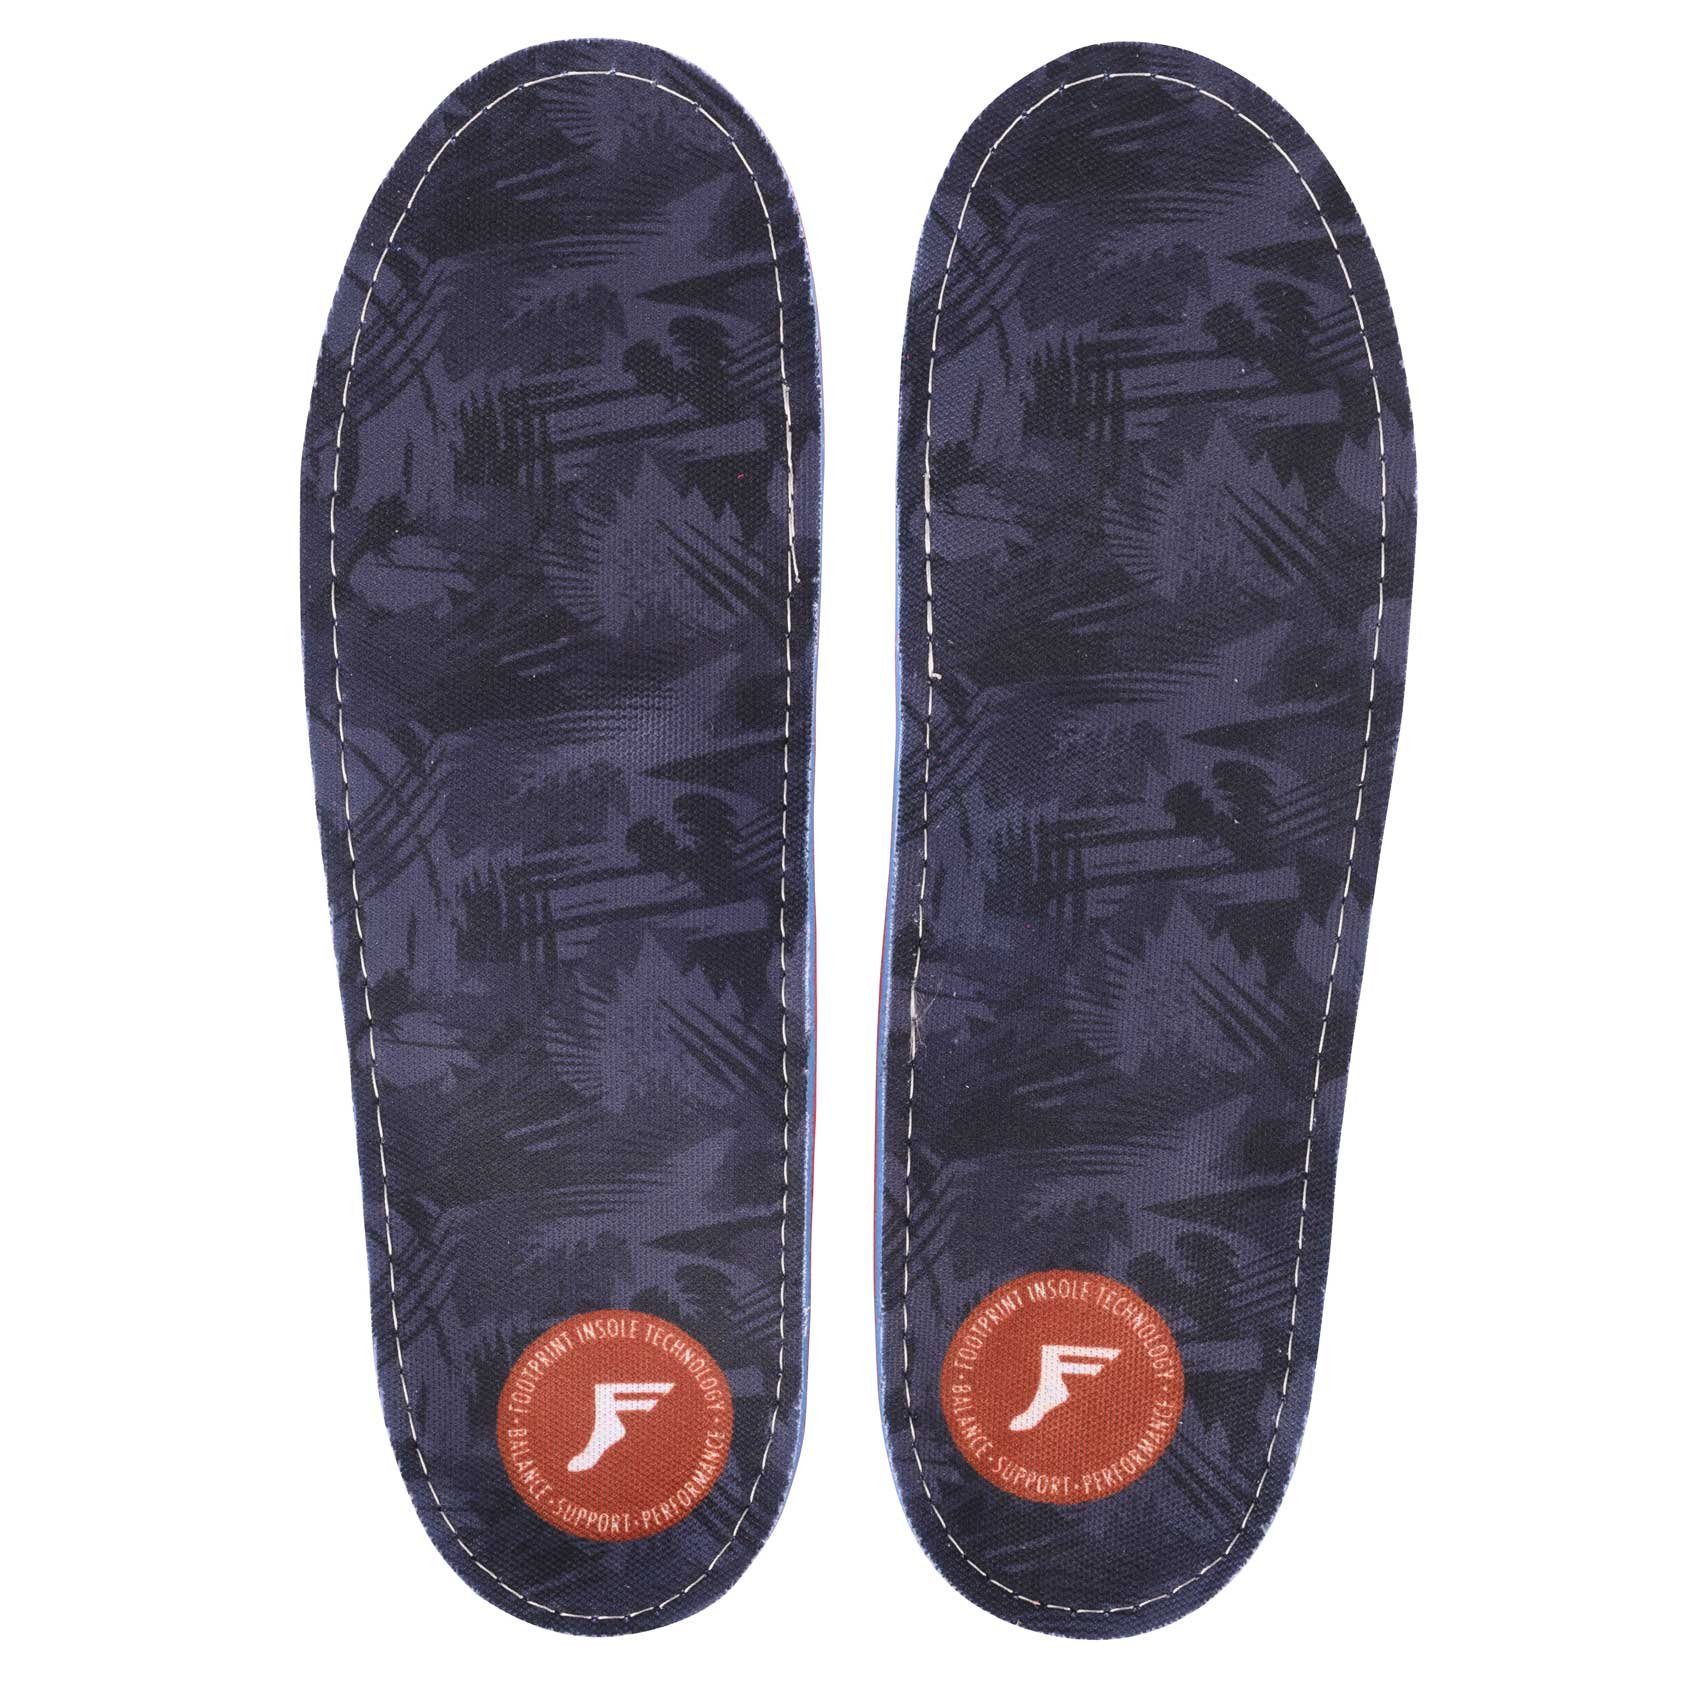 Footprint Insole Fuß- und Gelenkdämpfer Gamechangers - dark grey/camo (1 Paar)